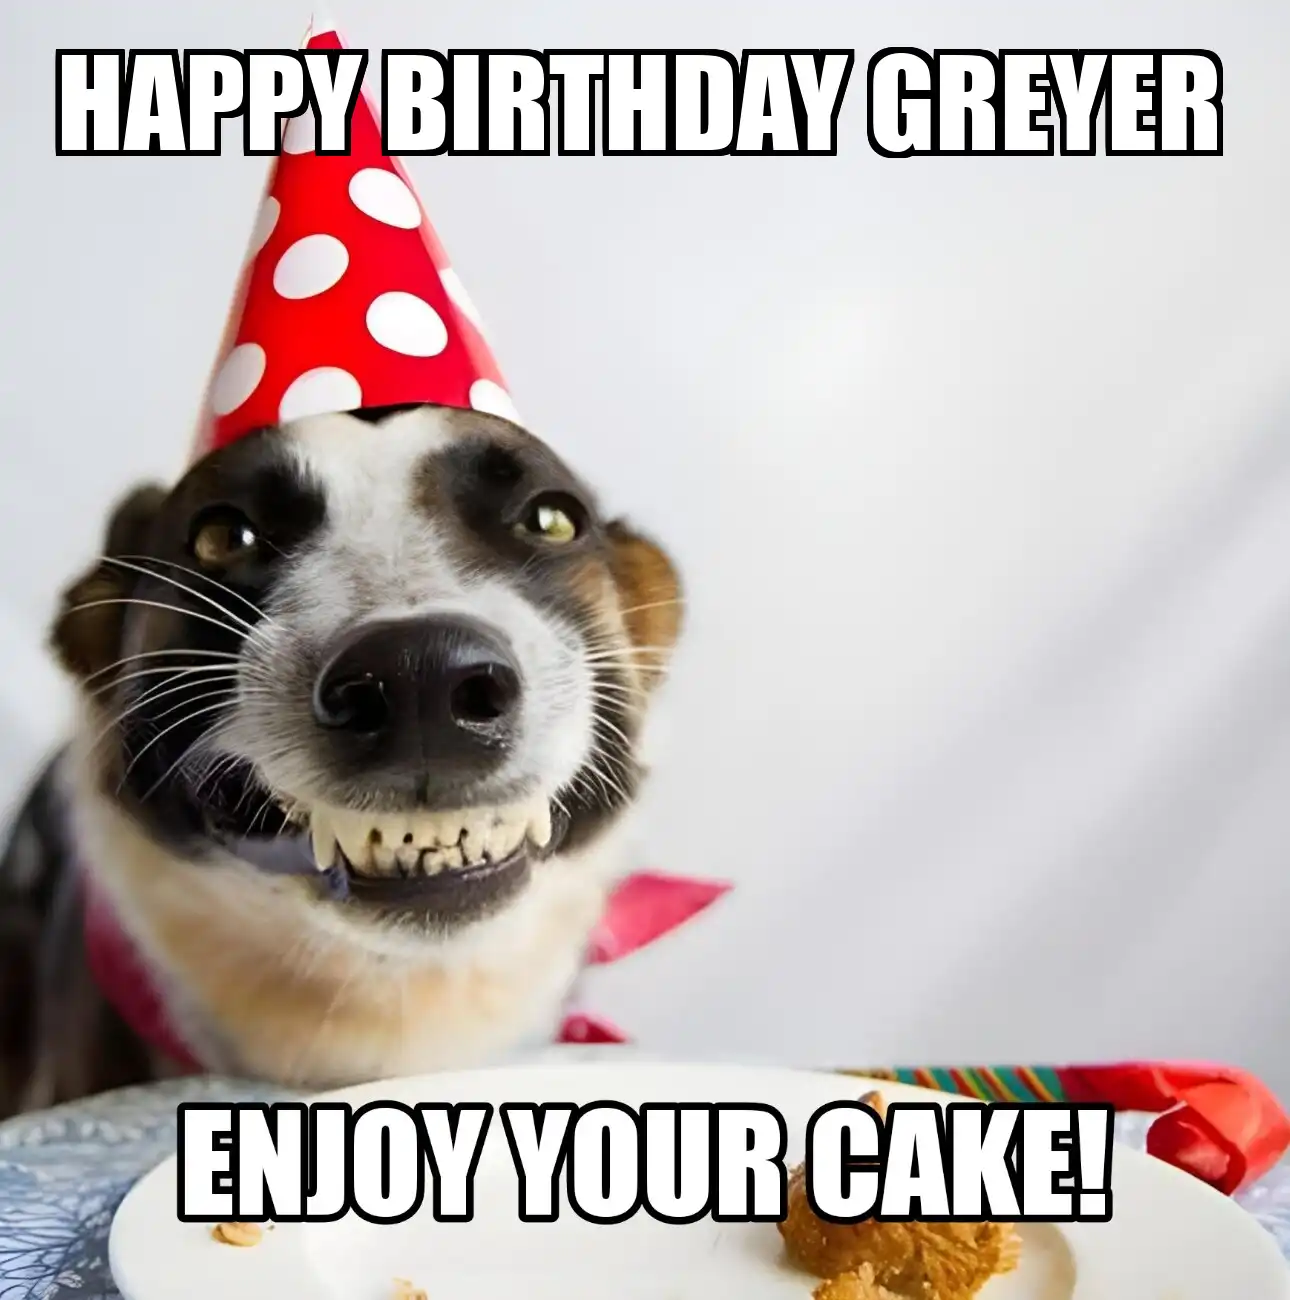 Happy Birthday Greyer Enjoy Your Cake Dog Meme